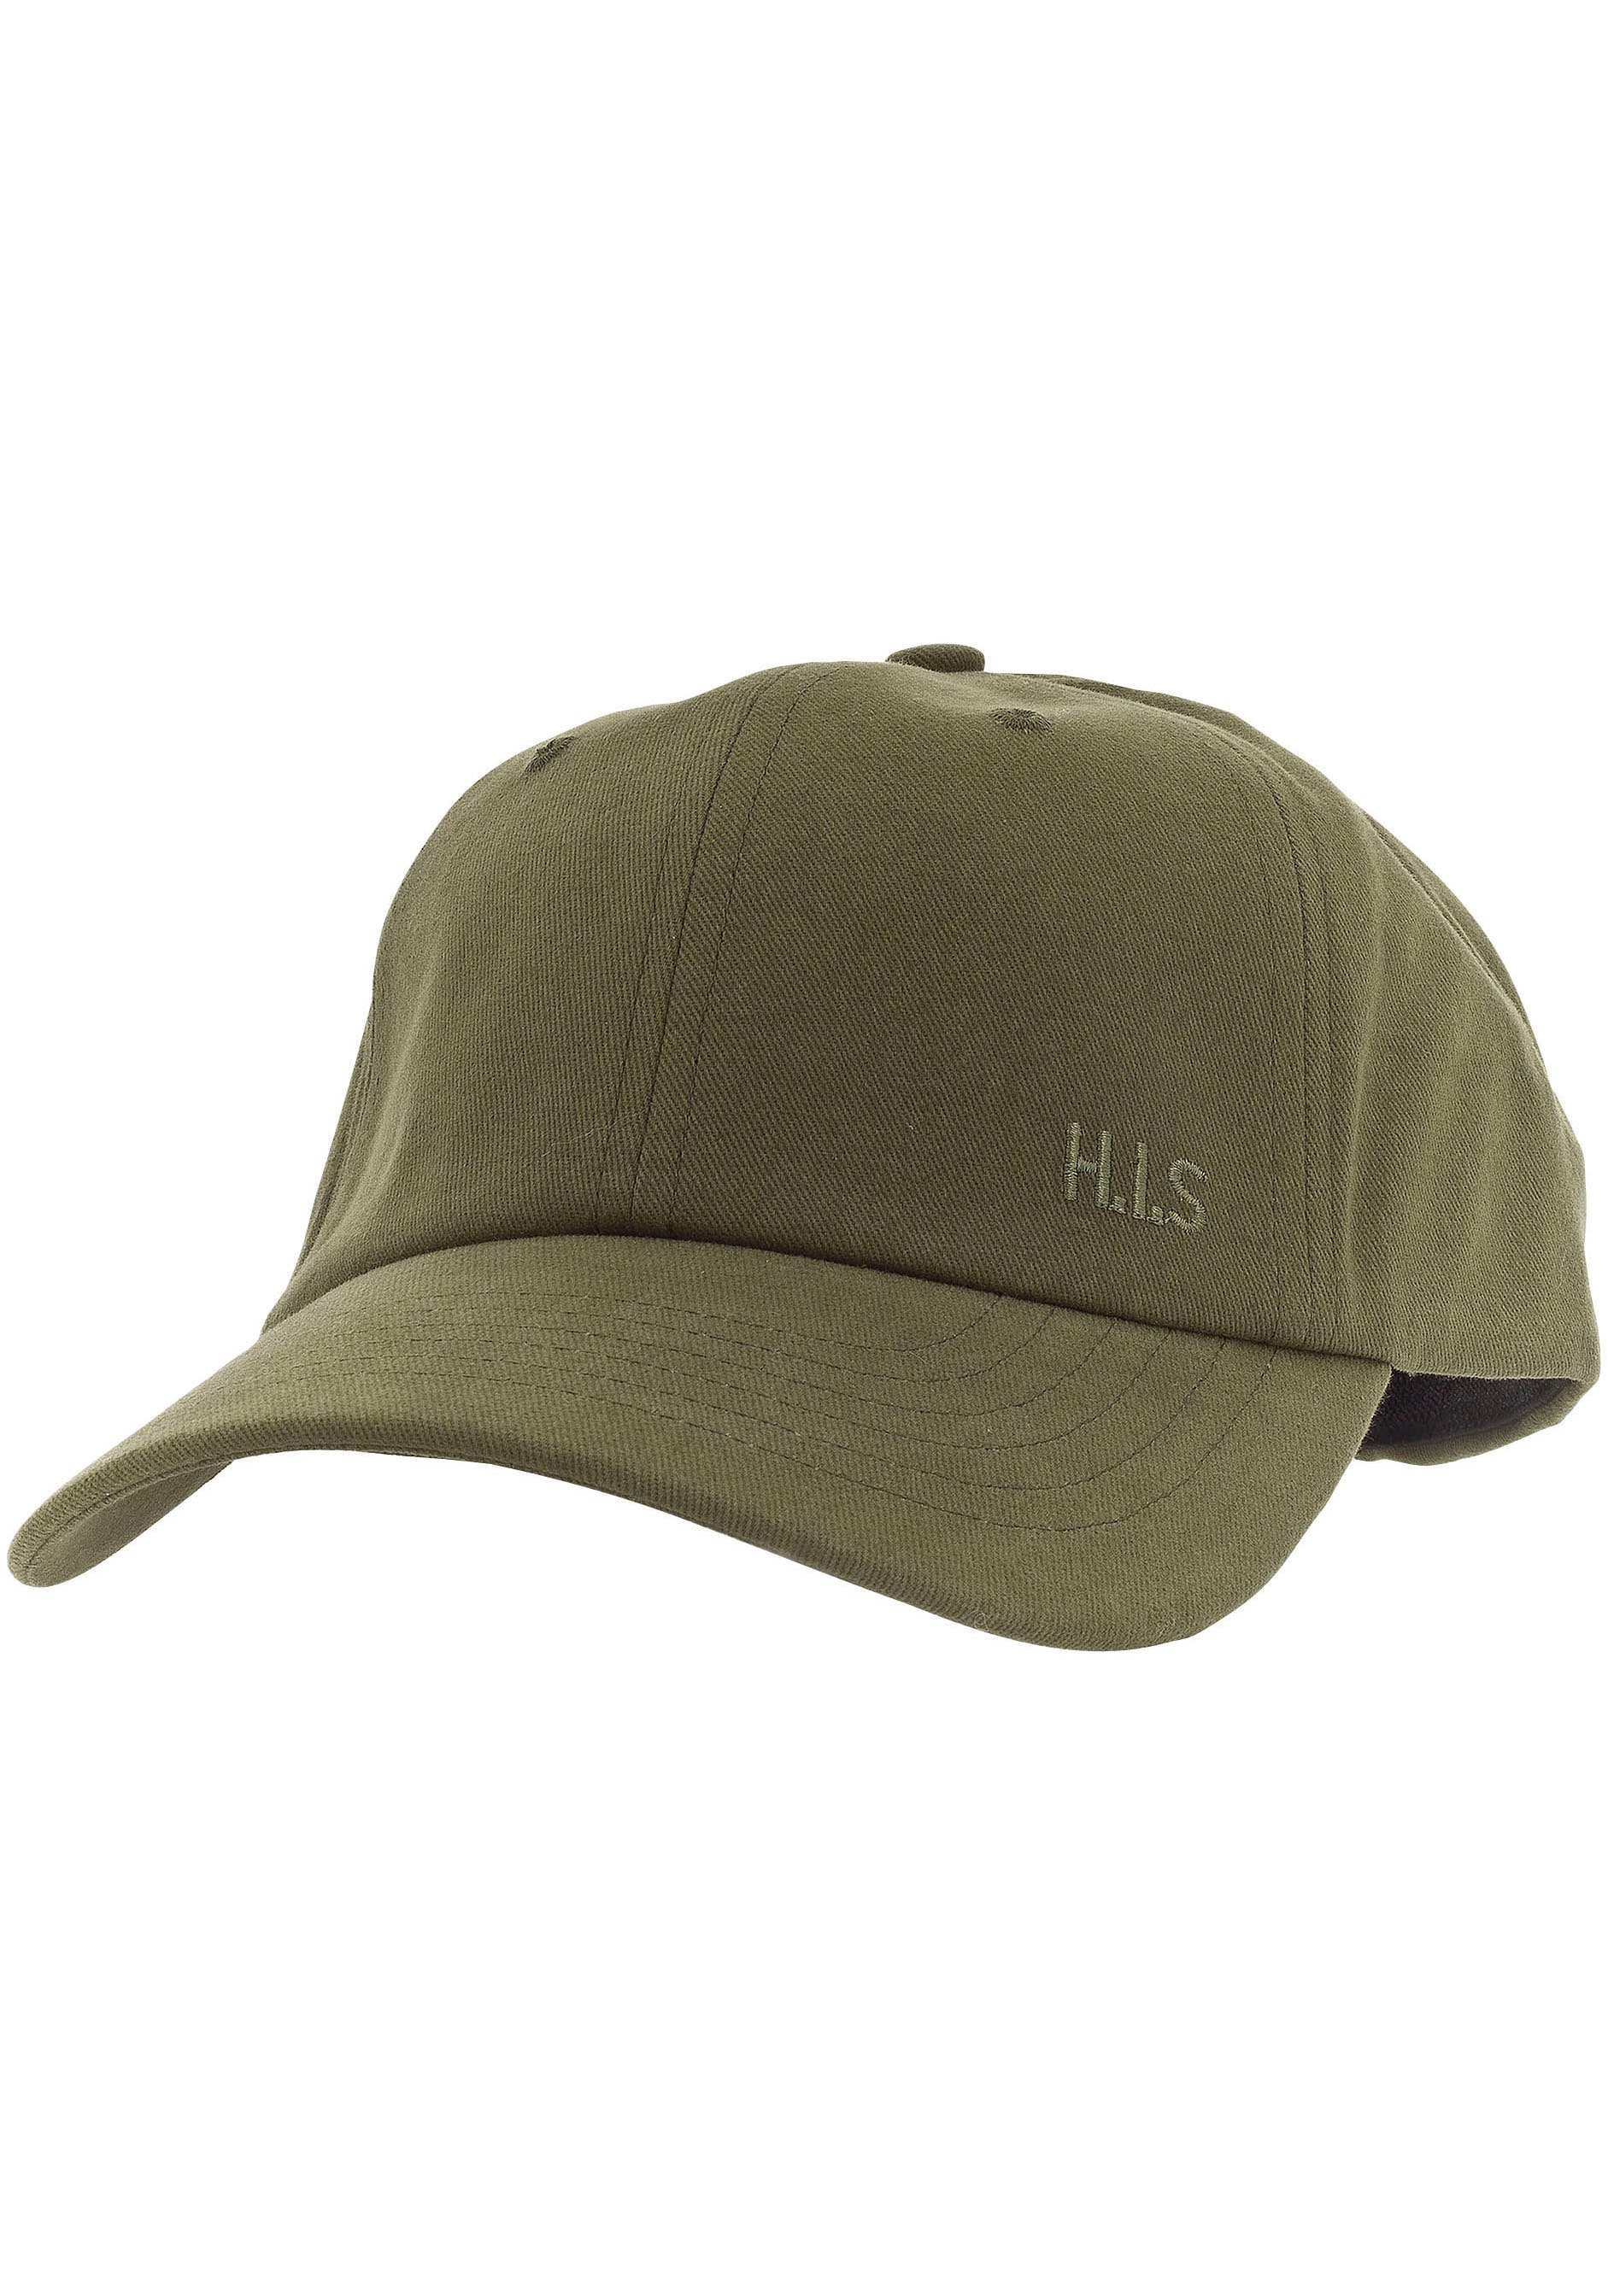 H.I.S Baseball Cap, Baumwollcap mit leichten Verwaschungen und H.I.S. Stickerei von H.I.S